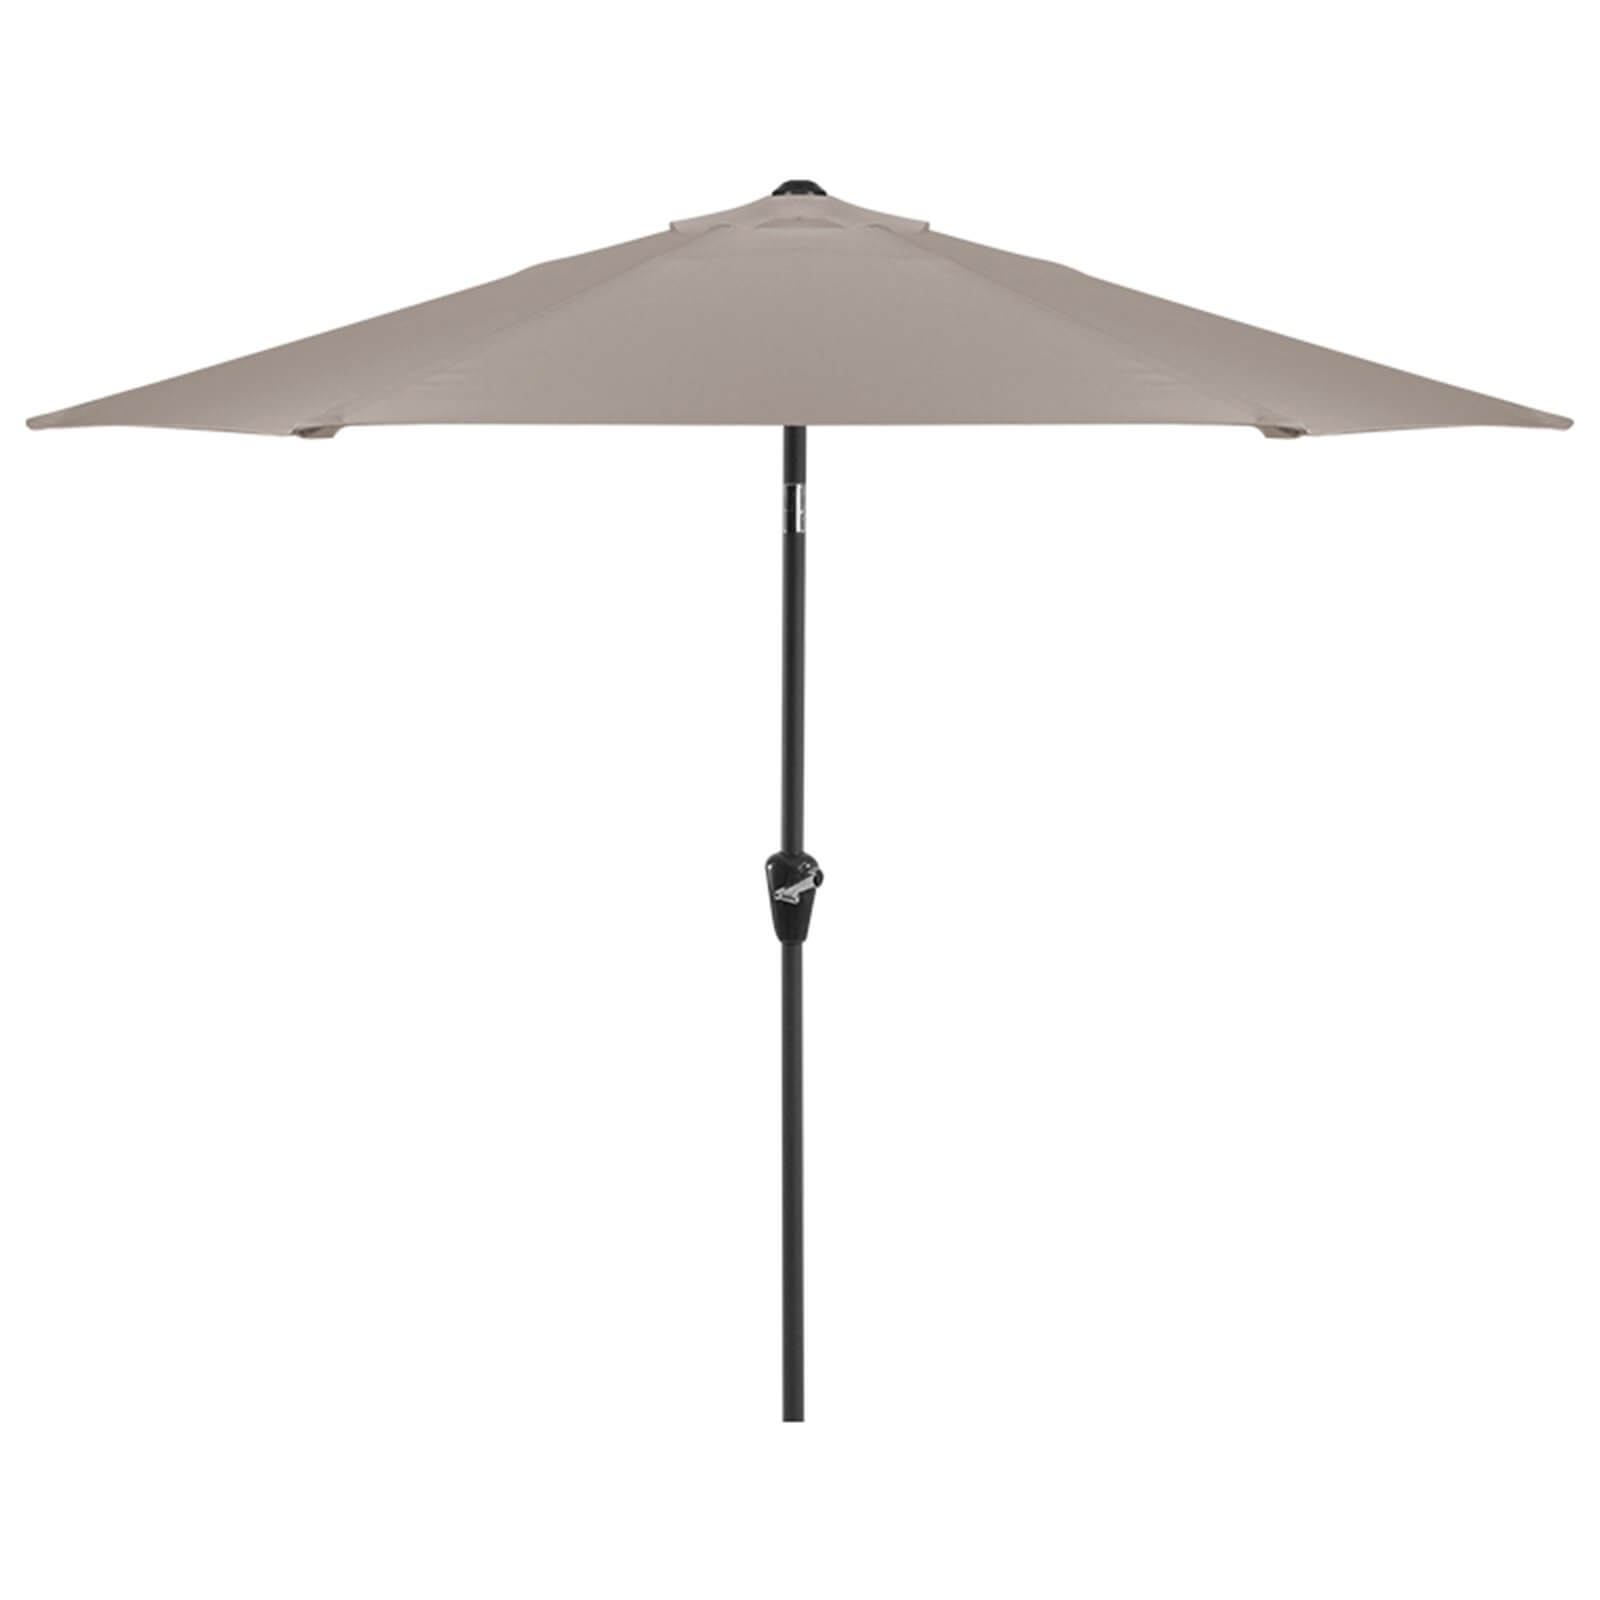 Aluminium Umbrella Parasol - 3m - Taupe